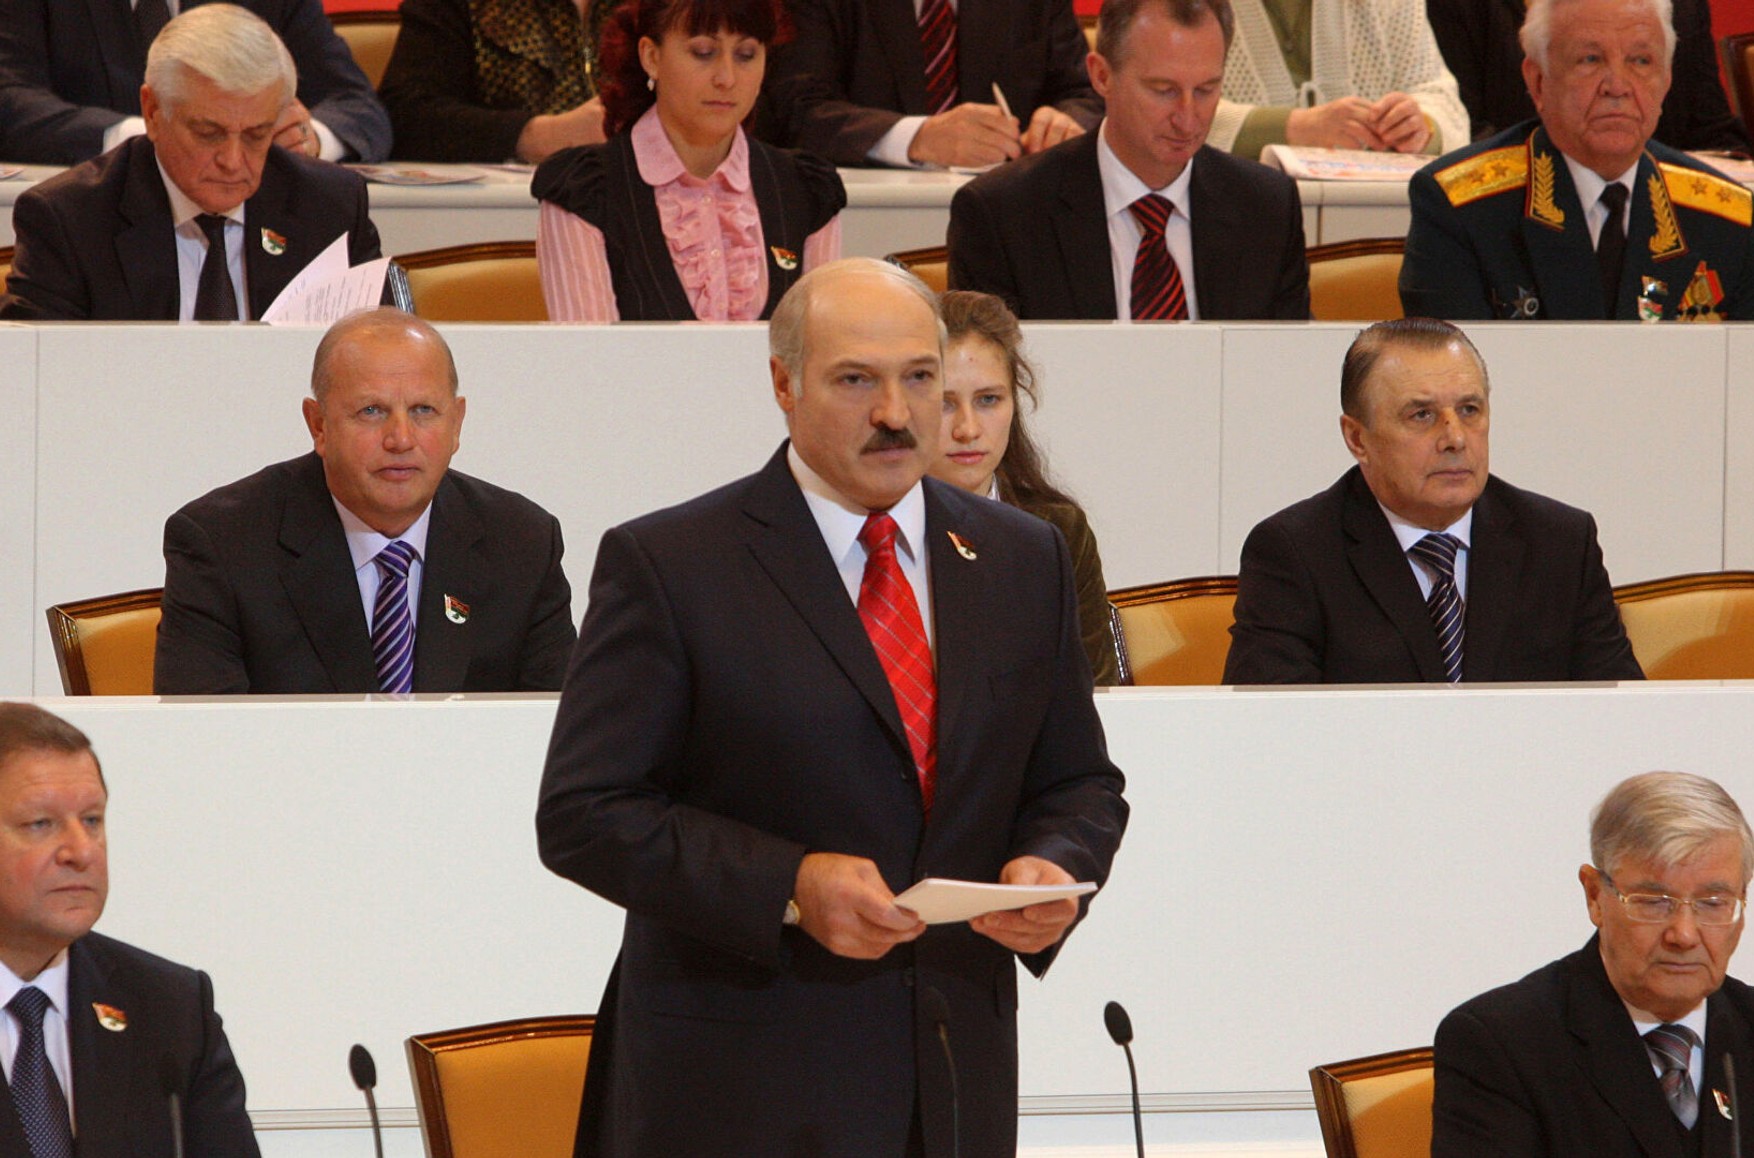 У Мінську стартує провладний форум, який покликаний легітимізувати оголошене Лукашенко зміна Конституції